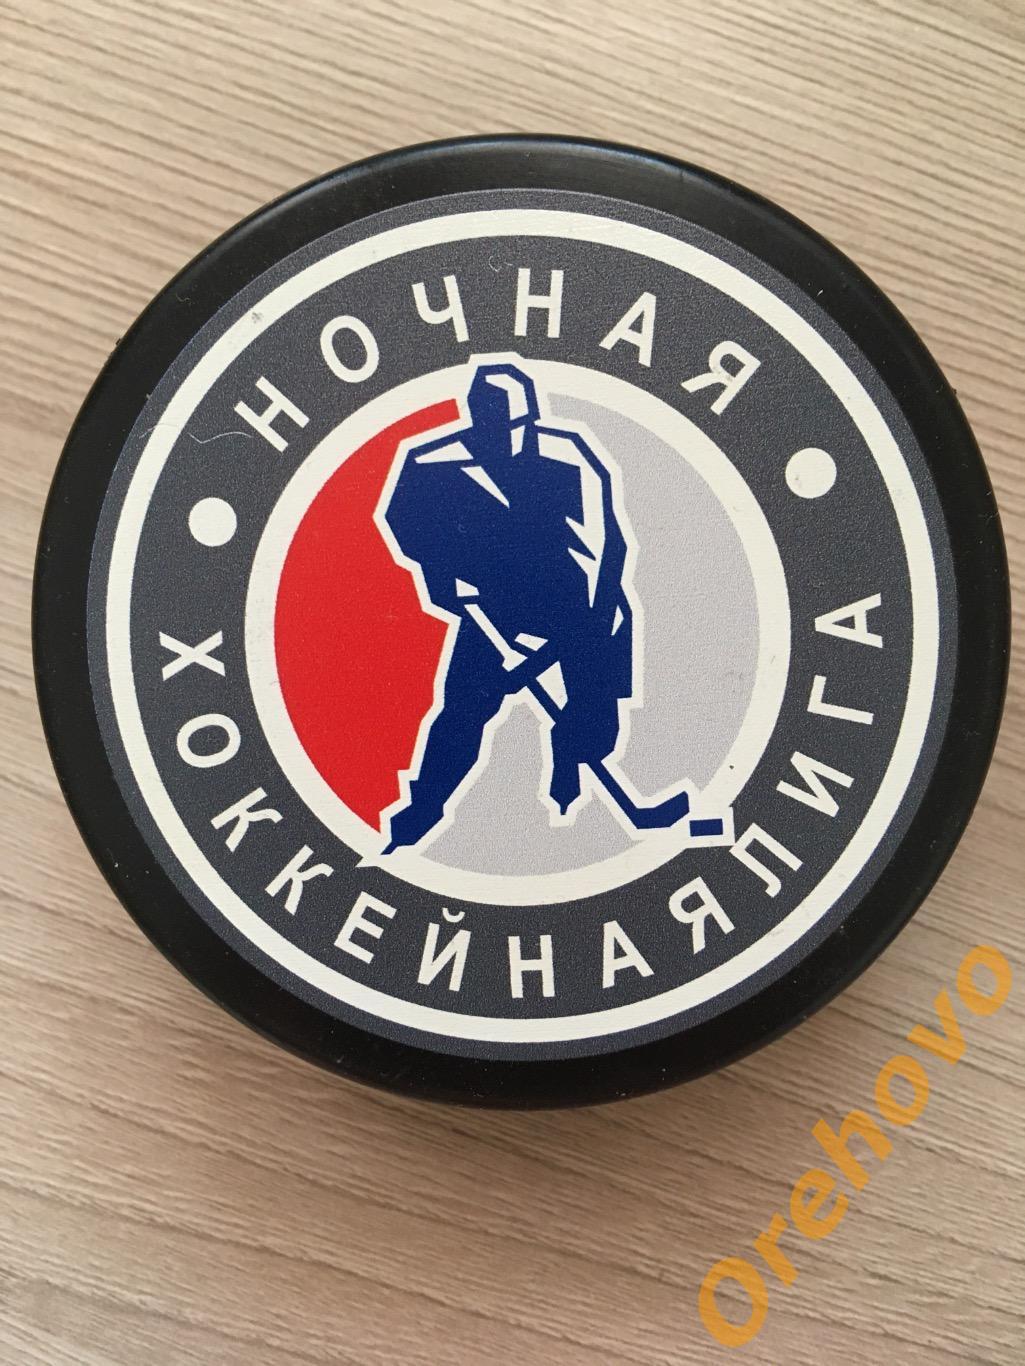 Шайба Ночная хоккейная Лига сезон 2016/2017 (сувенир)